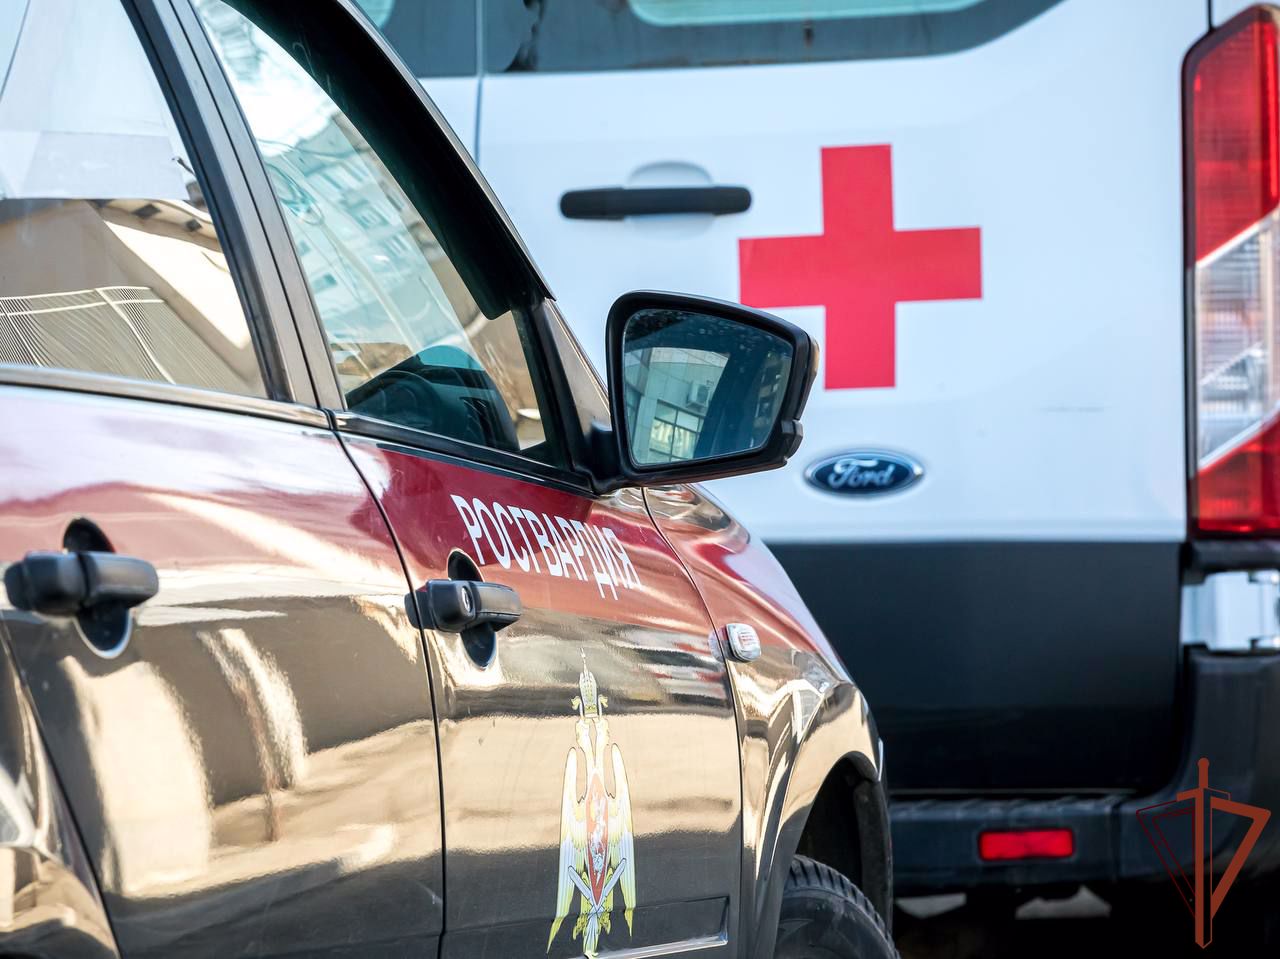 Около двух десятков карет скорой помощи в Абакане будет охранять Росгвардия (видео)